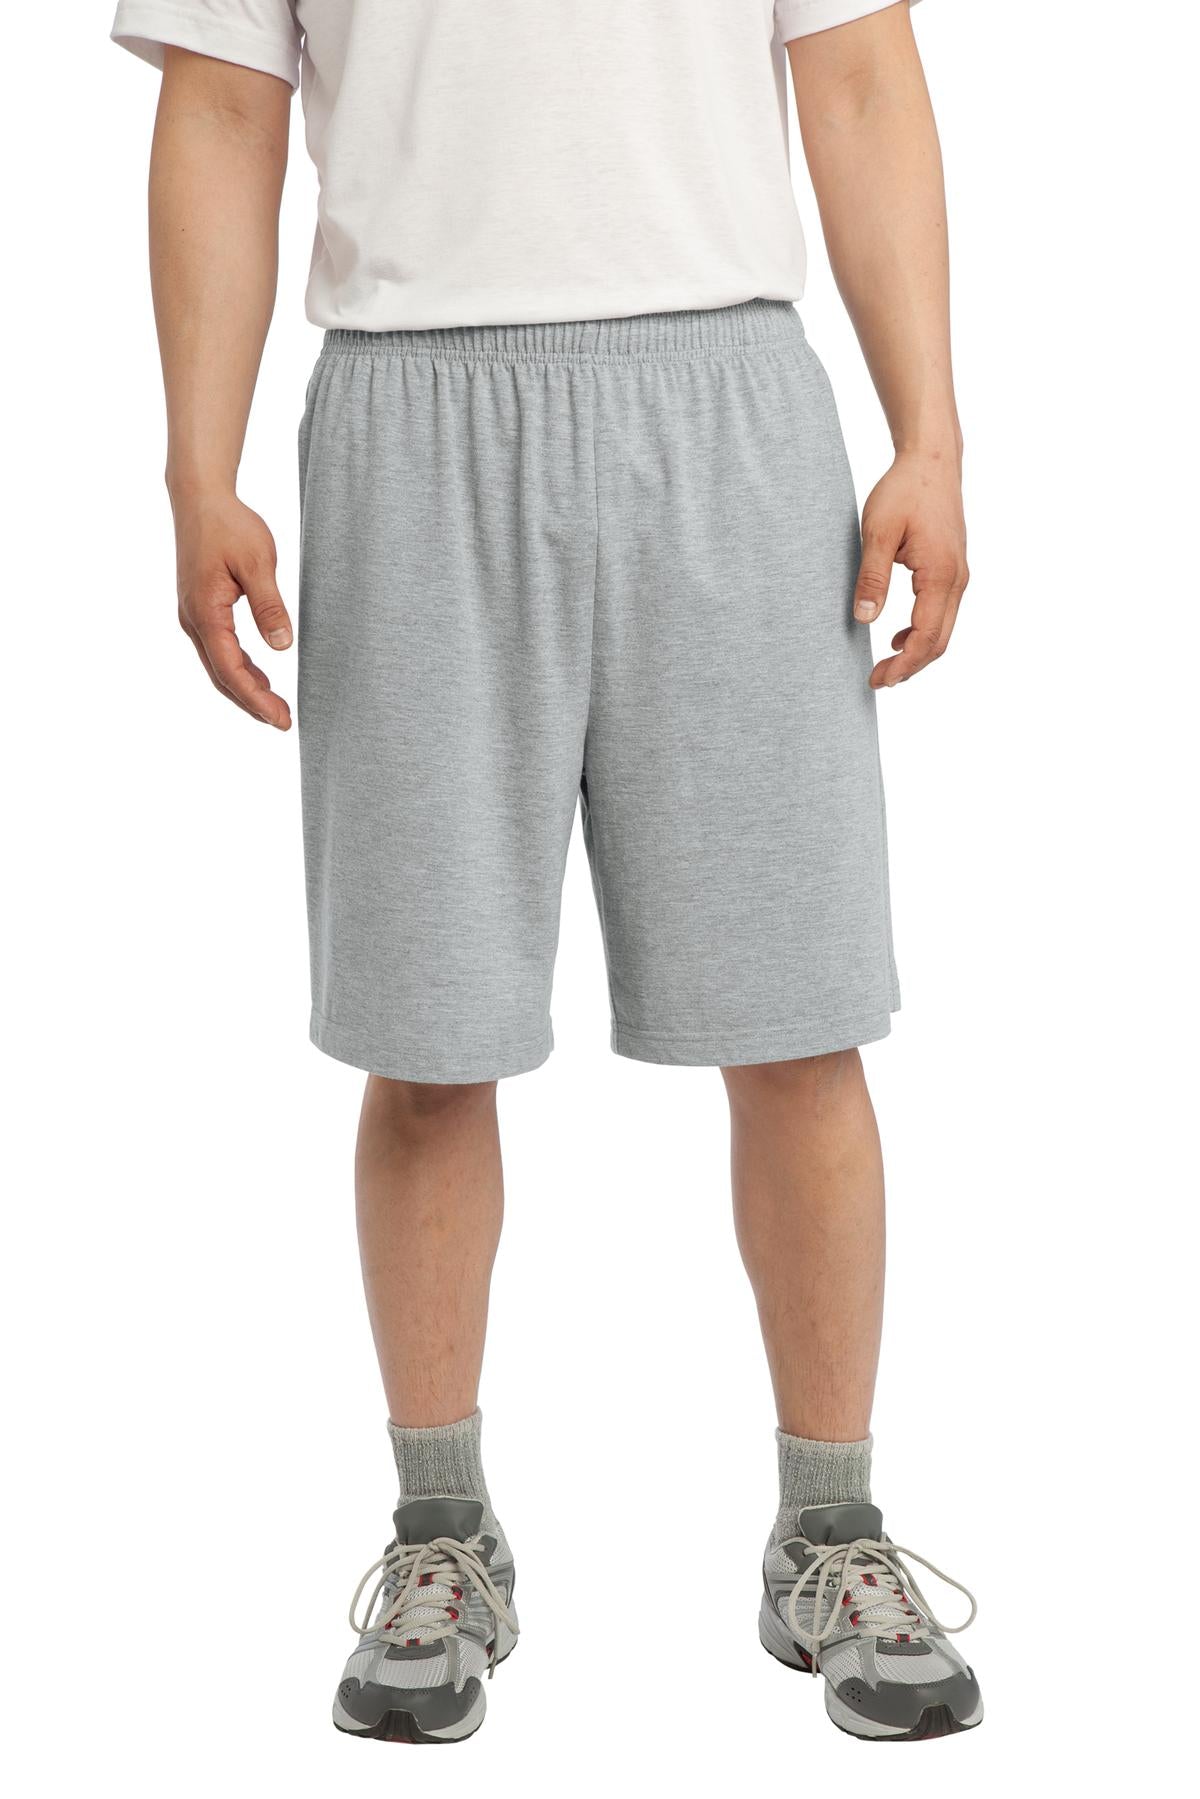 Sport-Tek Jersey Knit Short with Pockets. ST310